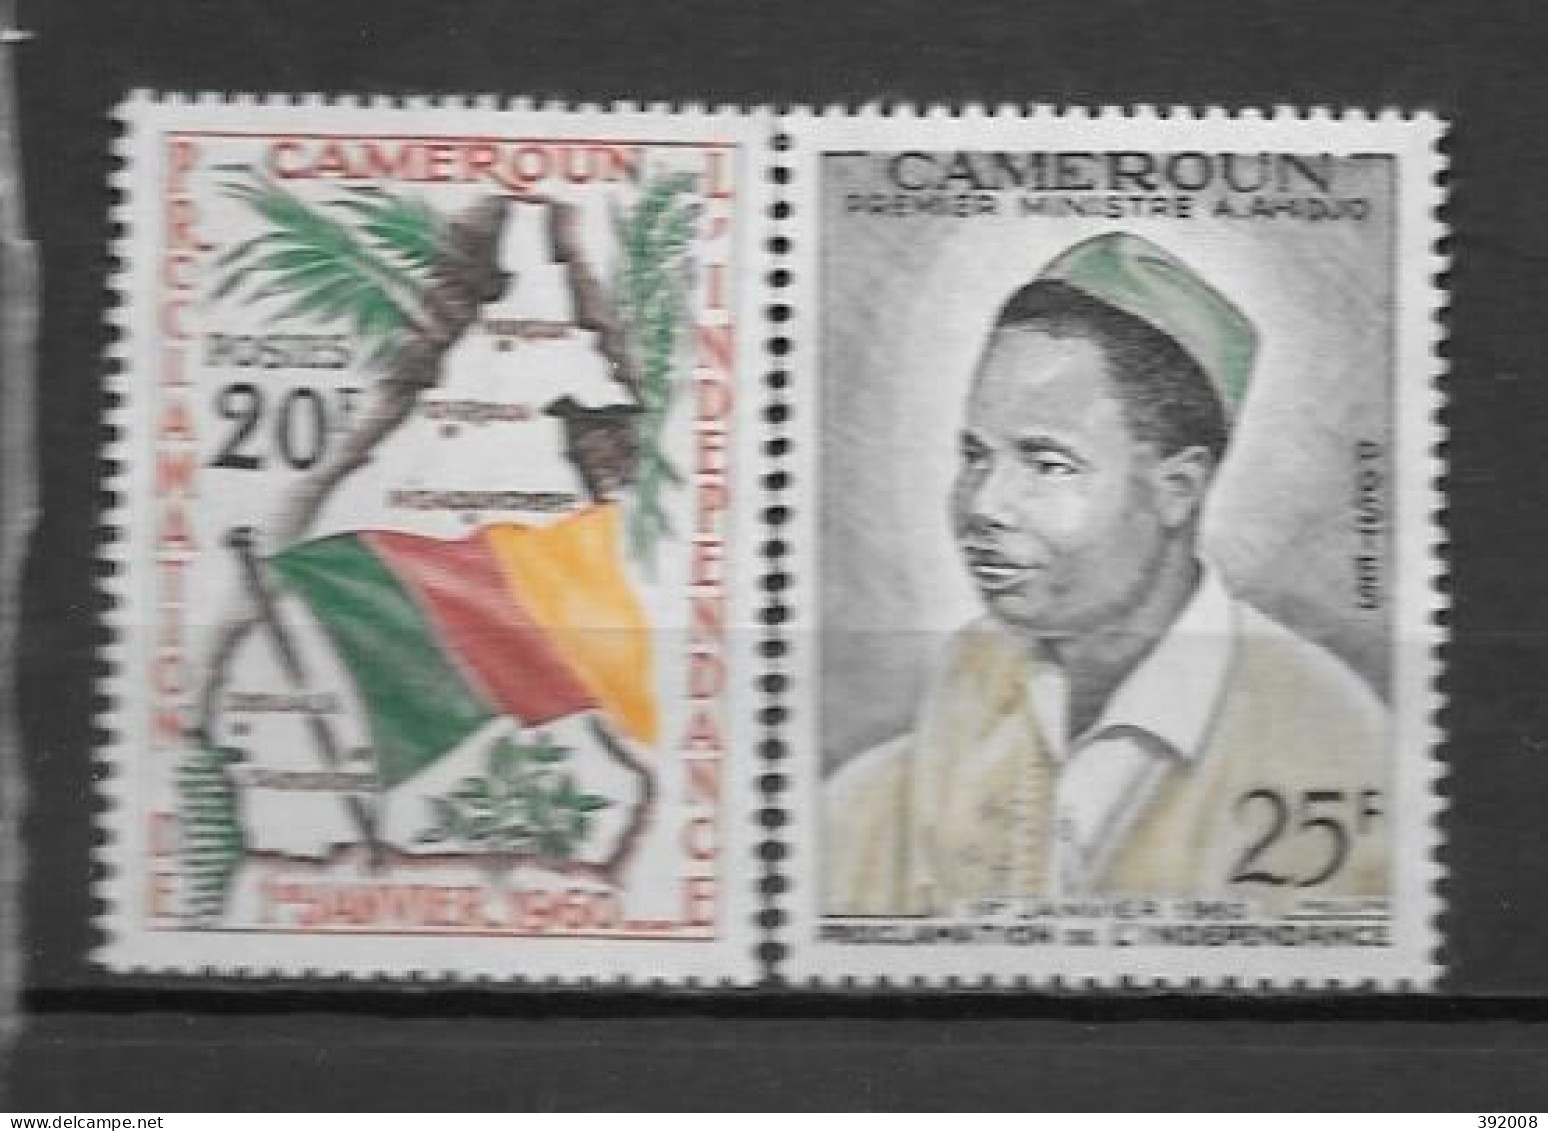 1960 - N° 310 à 311**MNH - Proclamation De La République  - Kamerun (1960-...)